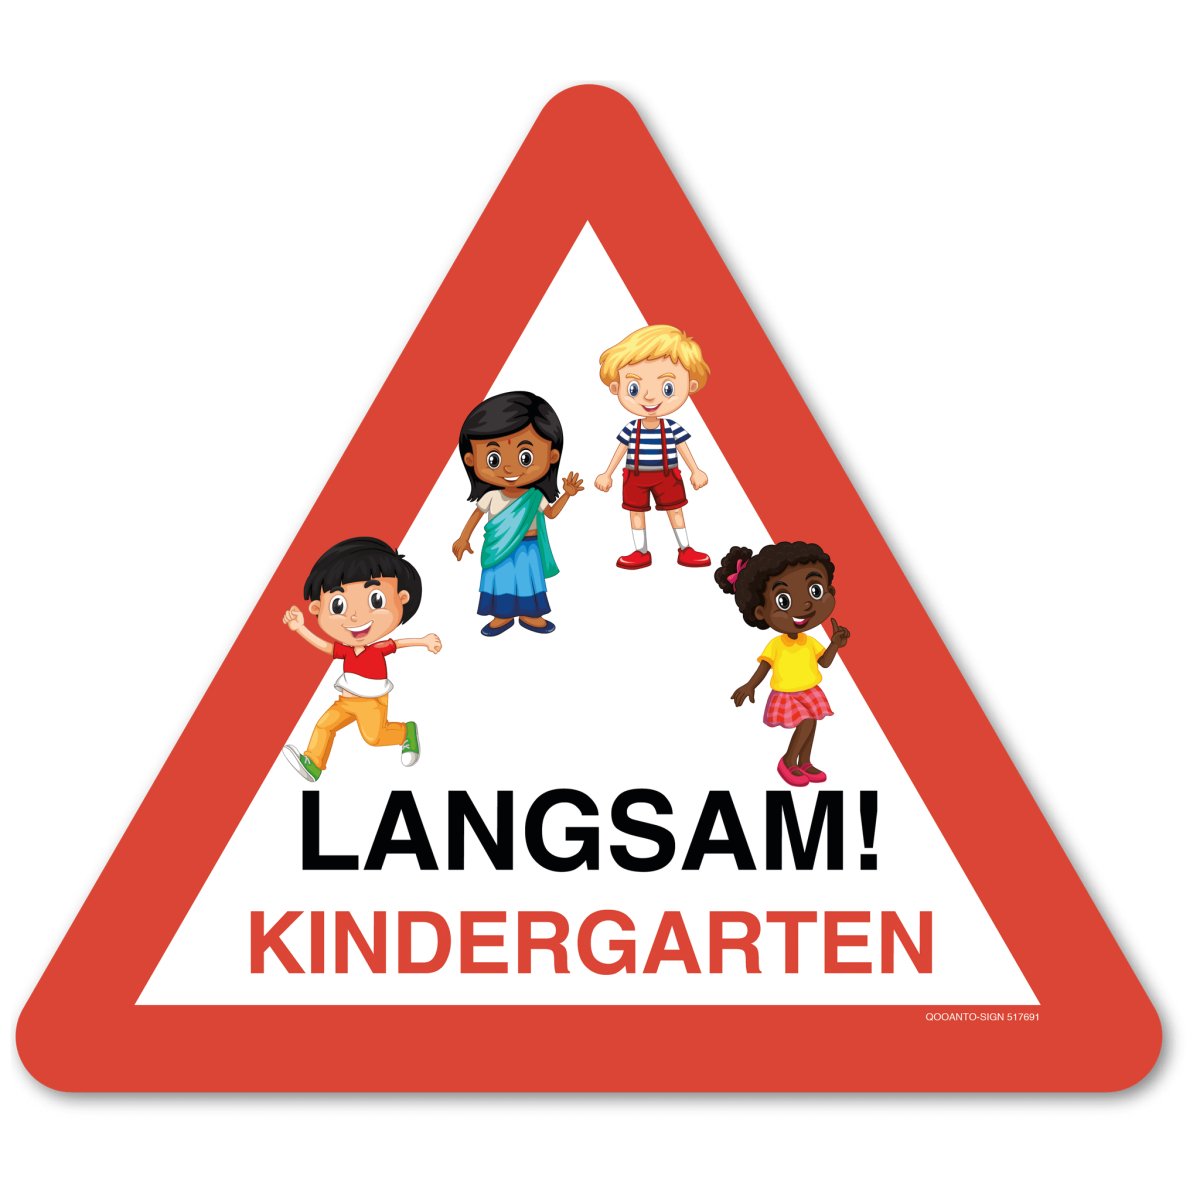 Achtung Kinder Schild oder Aufkleber, Warndreieck Langsam! Kindergarten Mit Kinder, aus Alu-Verbund oder Selbstklebefolie mit UV-Schutz - QOOANTO-SIGN